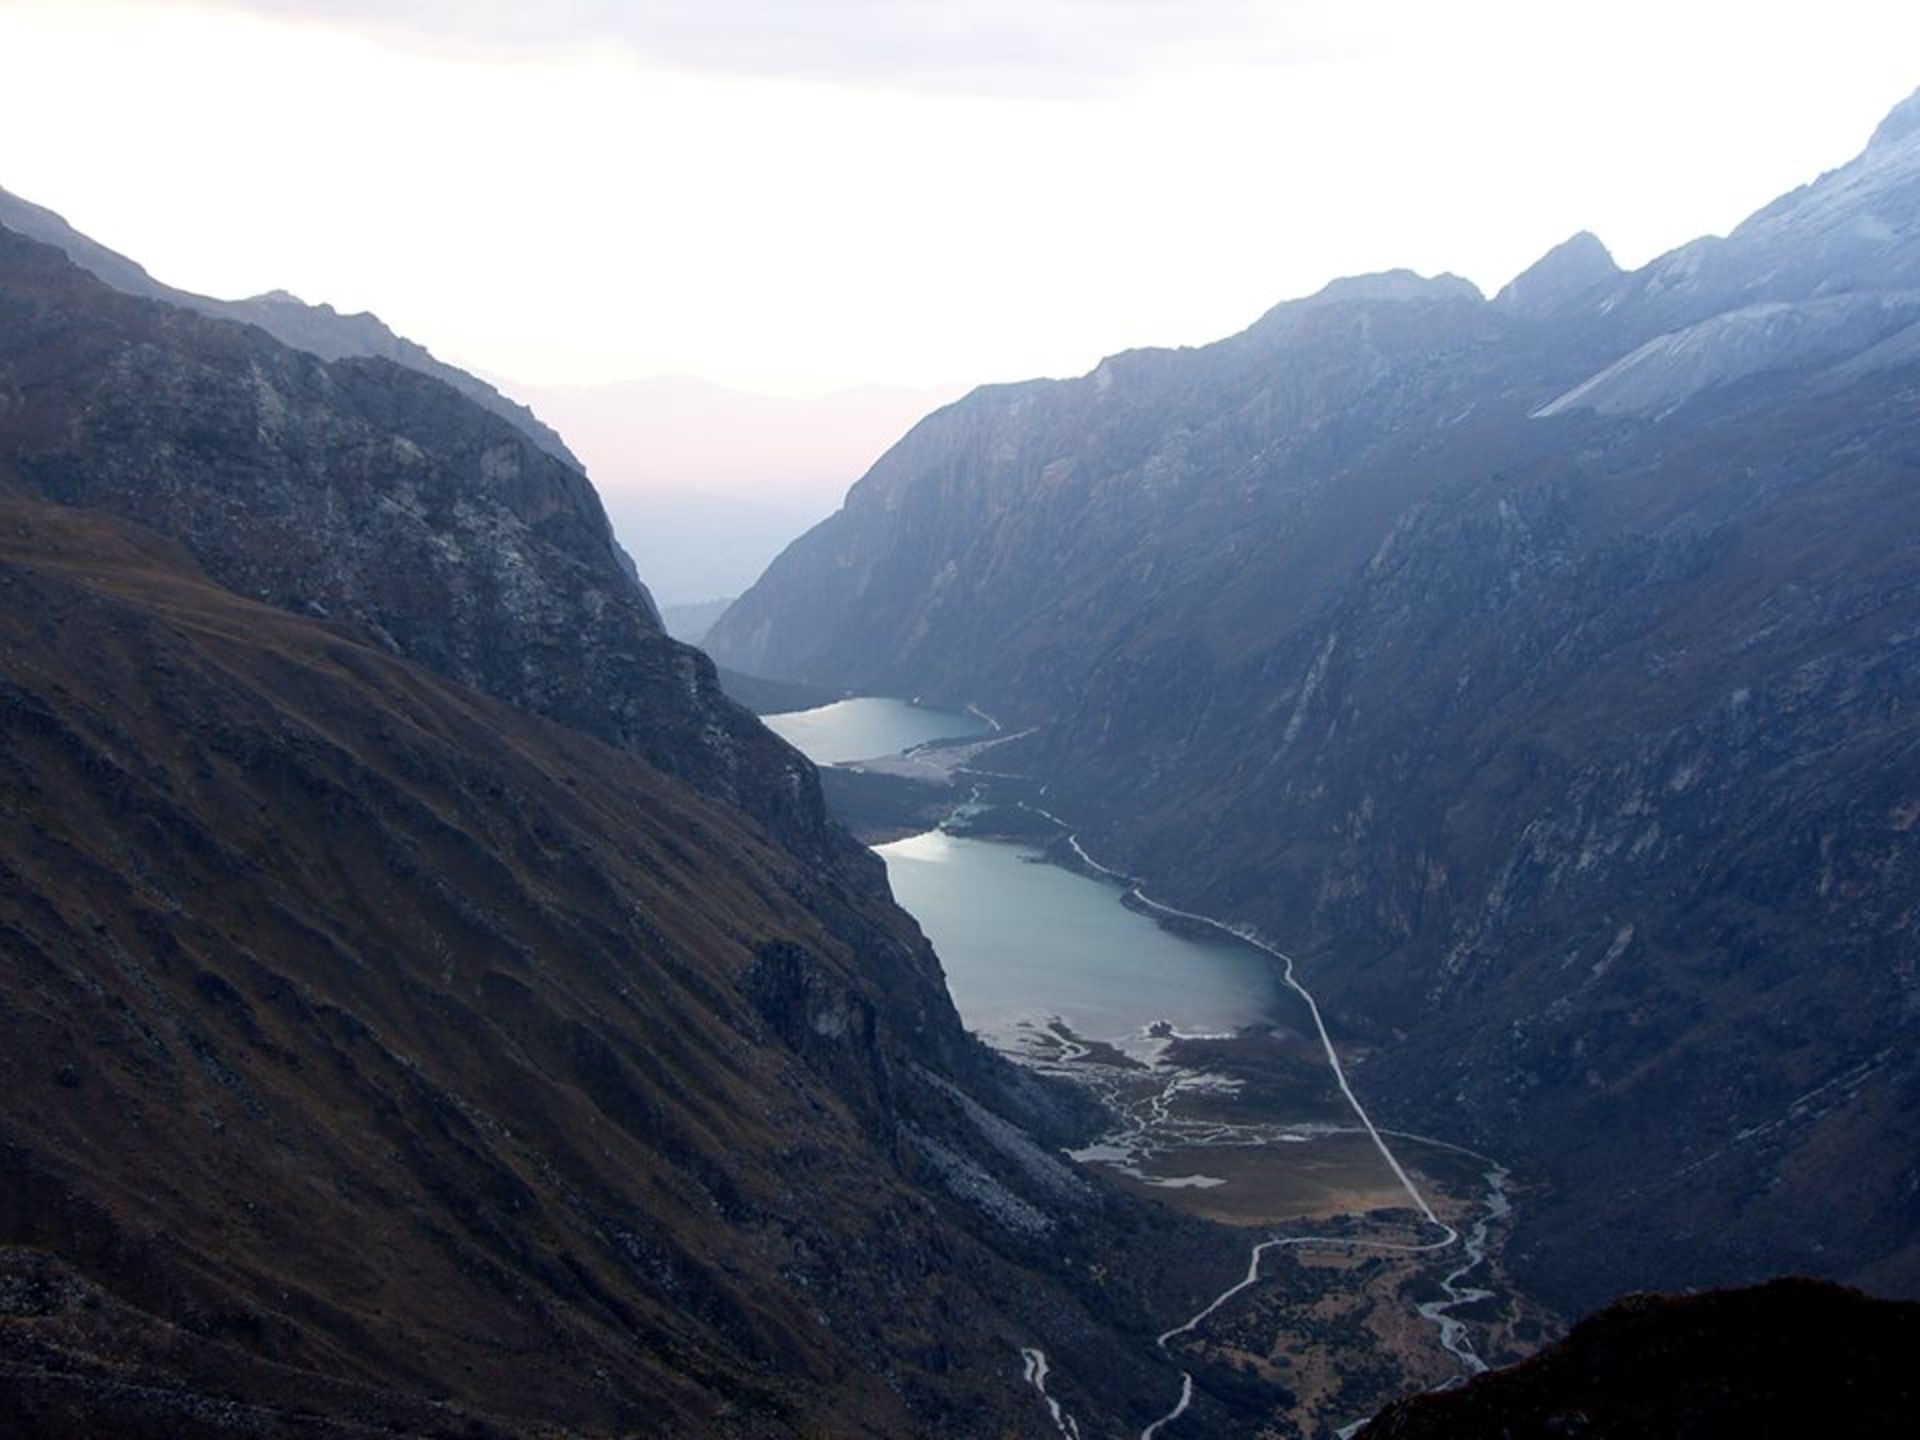 Jezera Llanganuco, základní tábor Expedice Peru 1970 se nacházel mezi nimi.